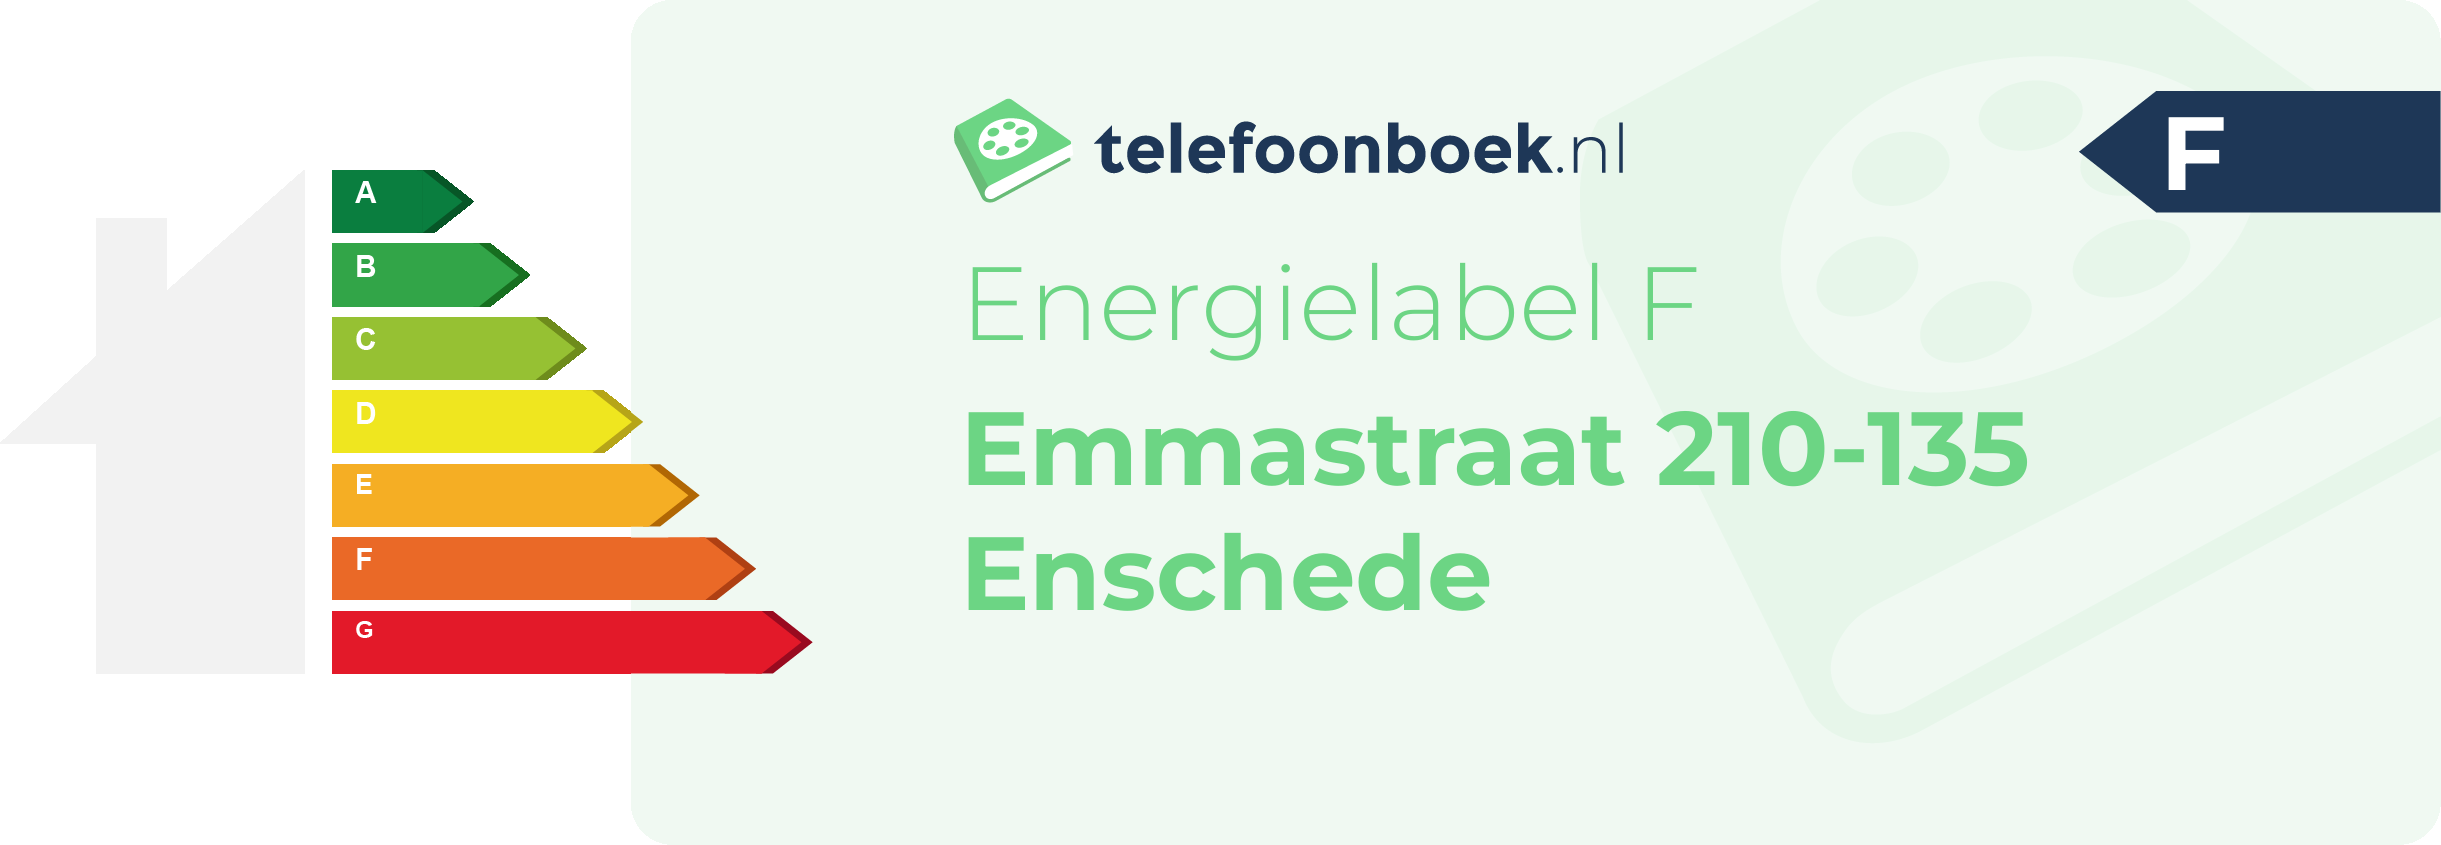 Energielabel Emmastraat 210-135 Enschede